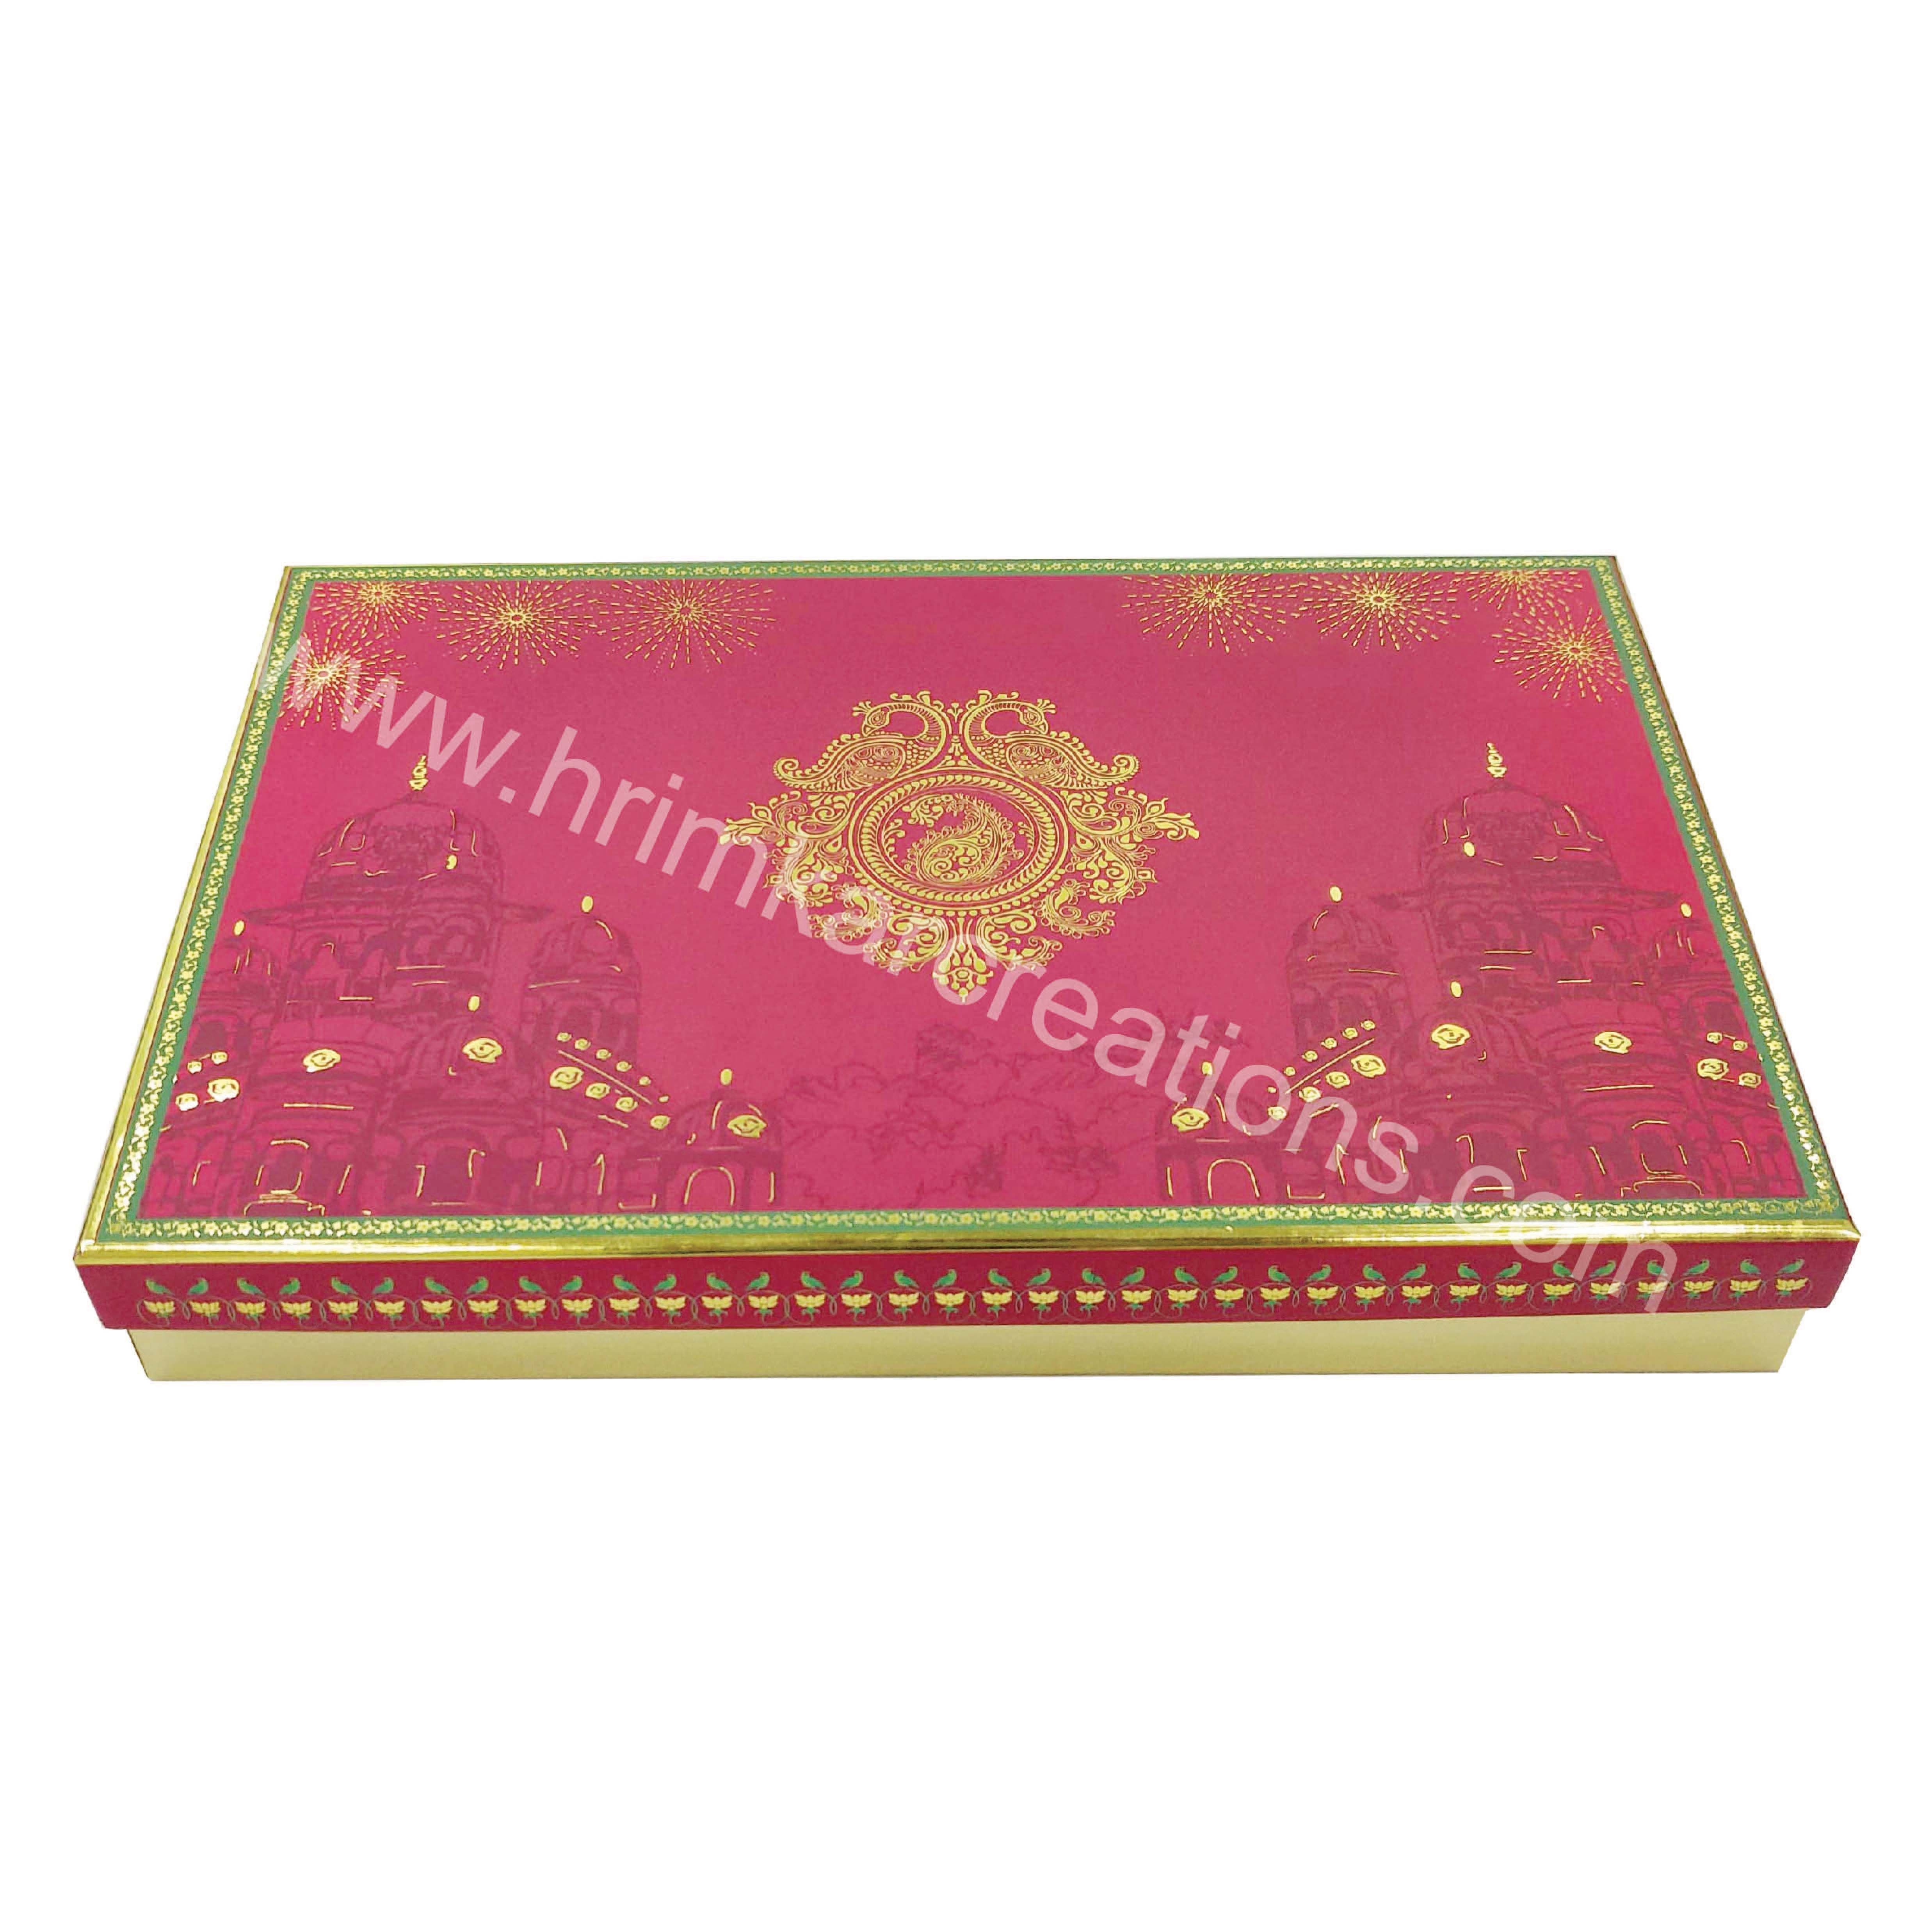 Maharaja 1 Kg Sweet Box